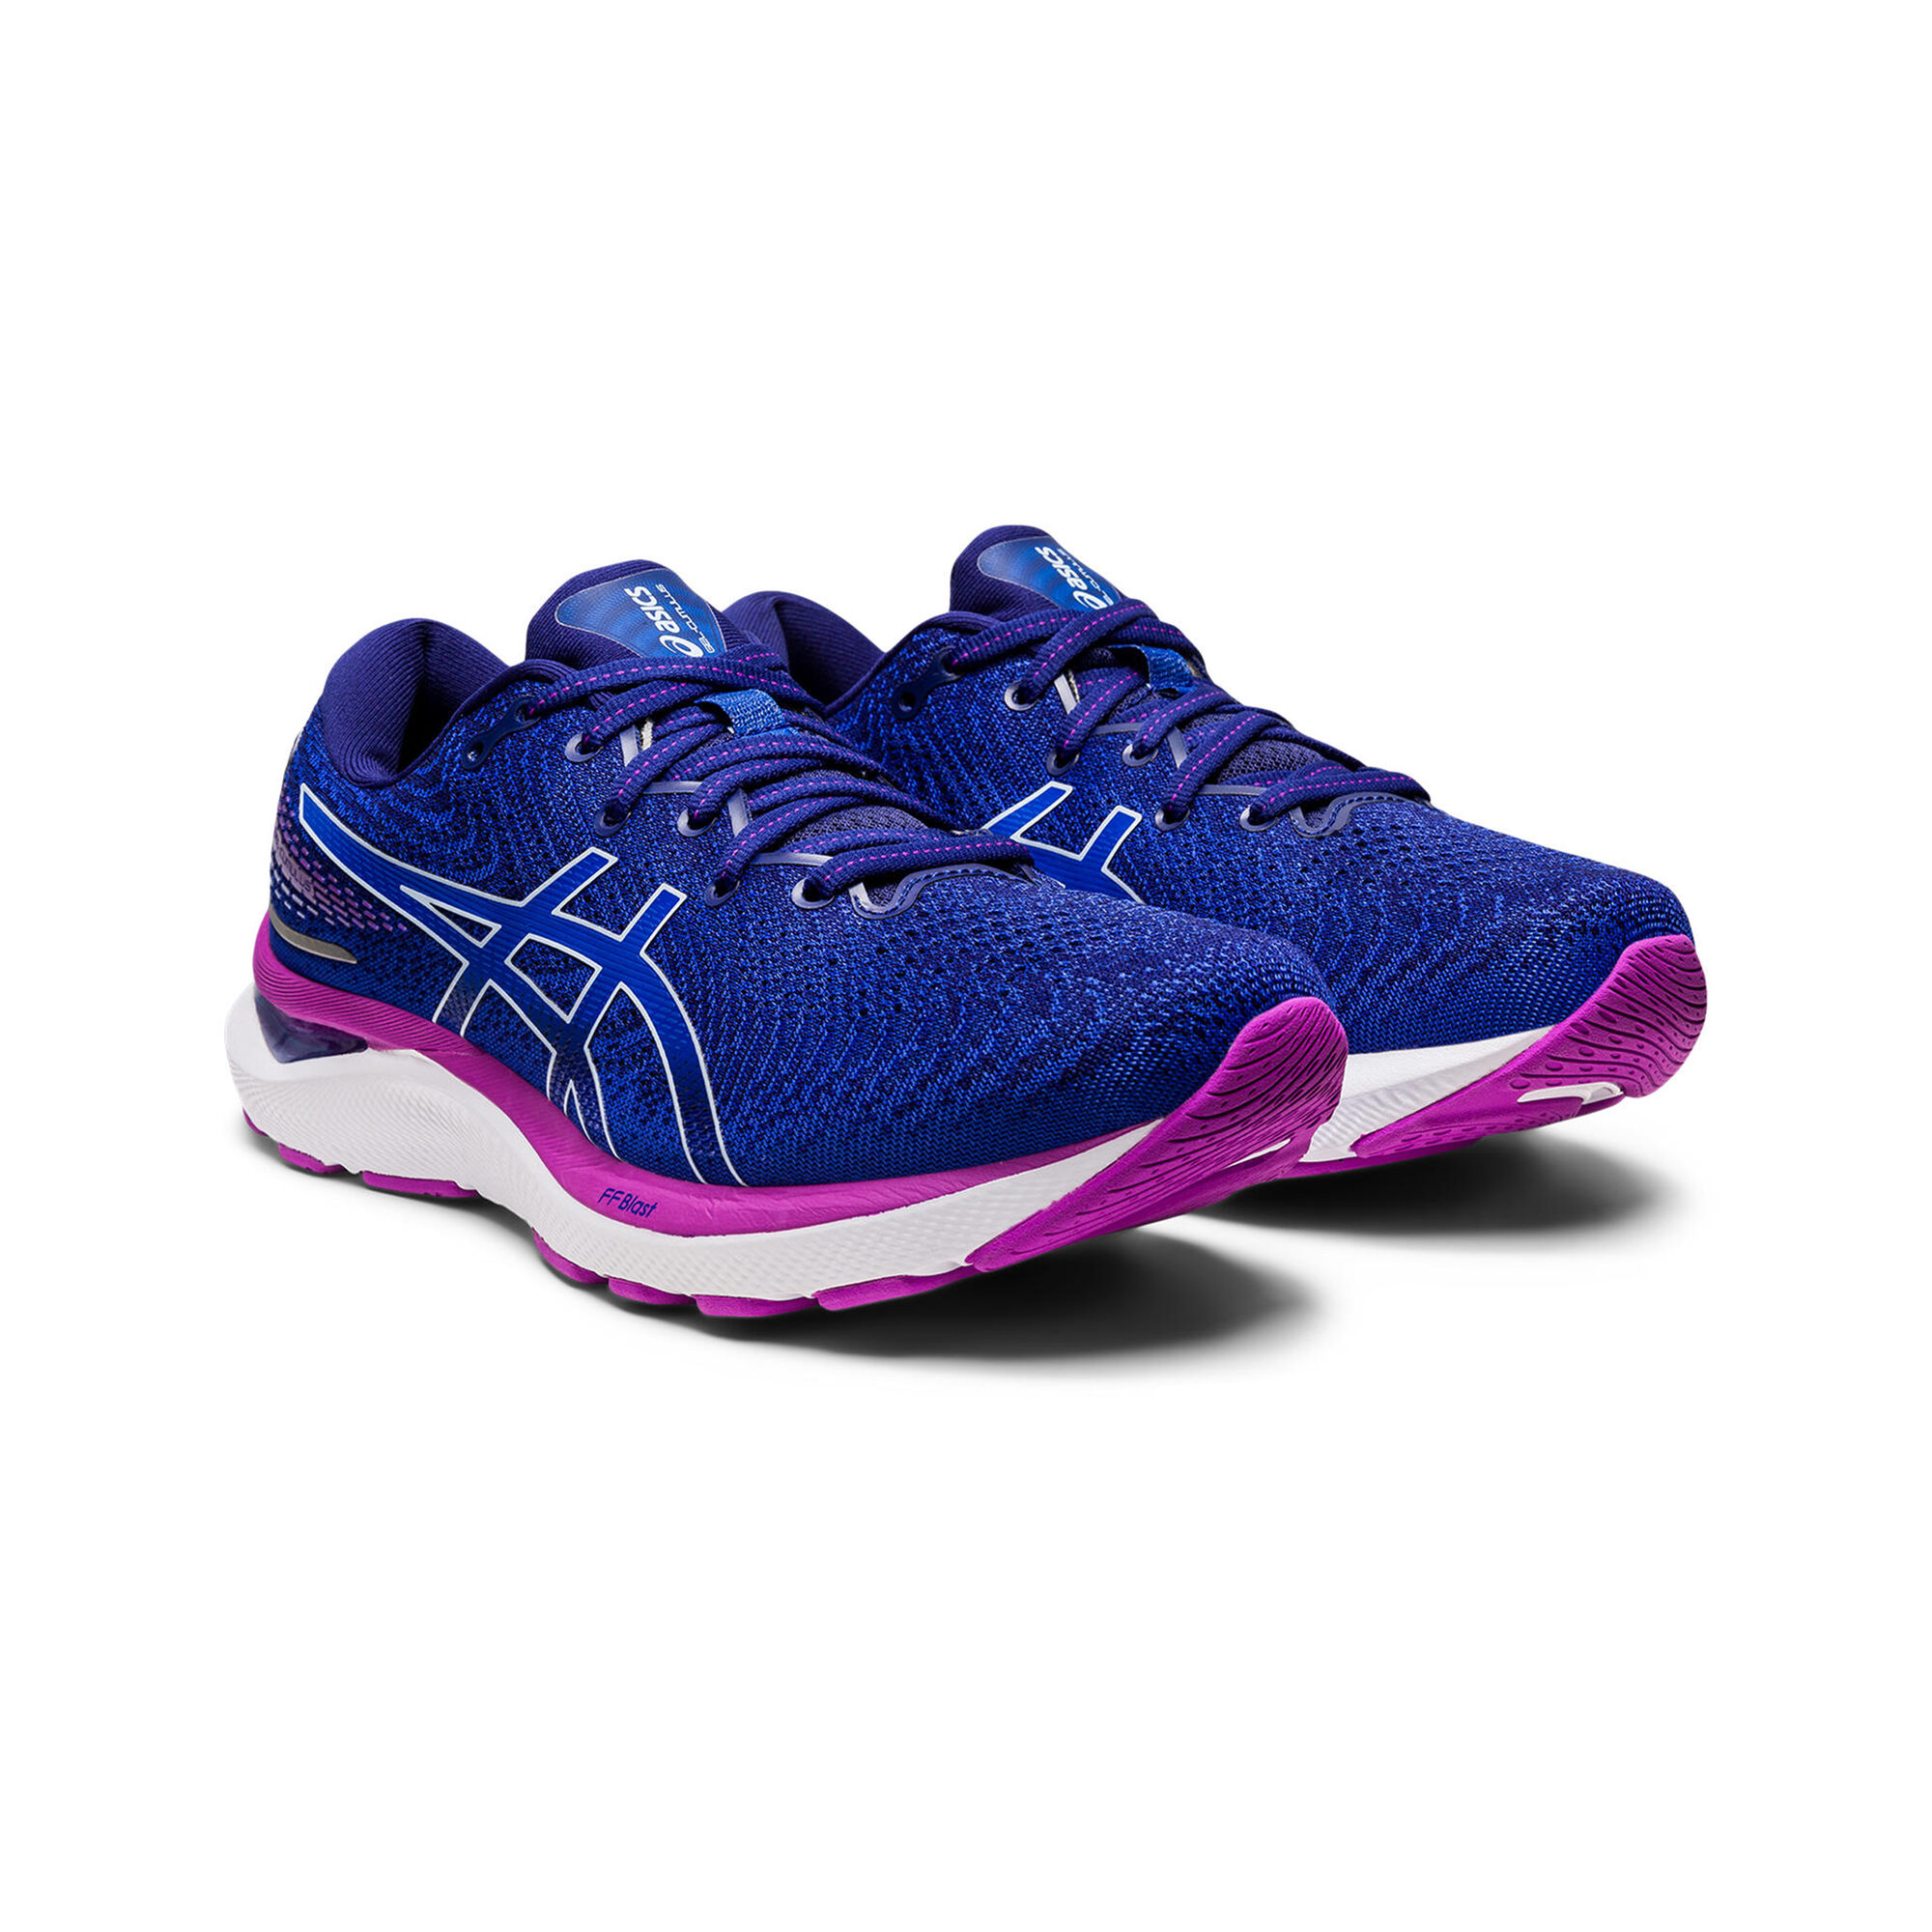 Chaussures de running - ASICS - GEL-CUMULUS 24 - Femme - Bleu/Violet